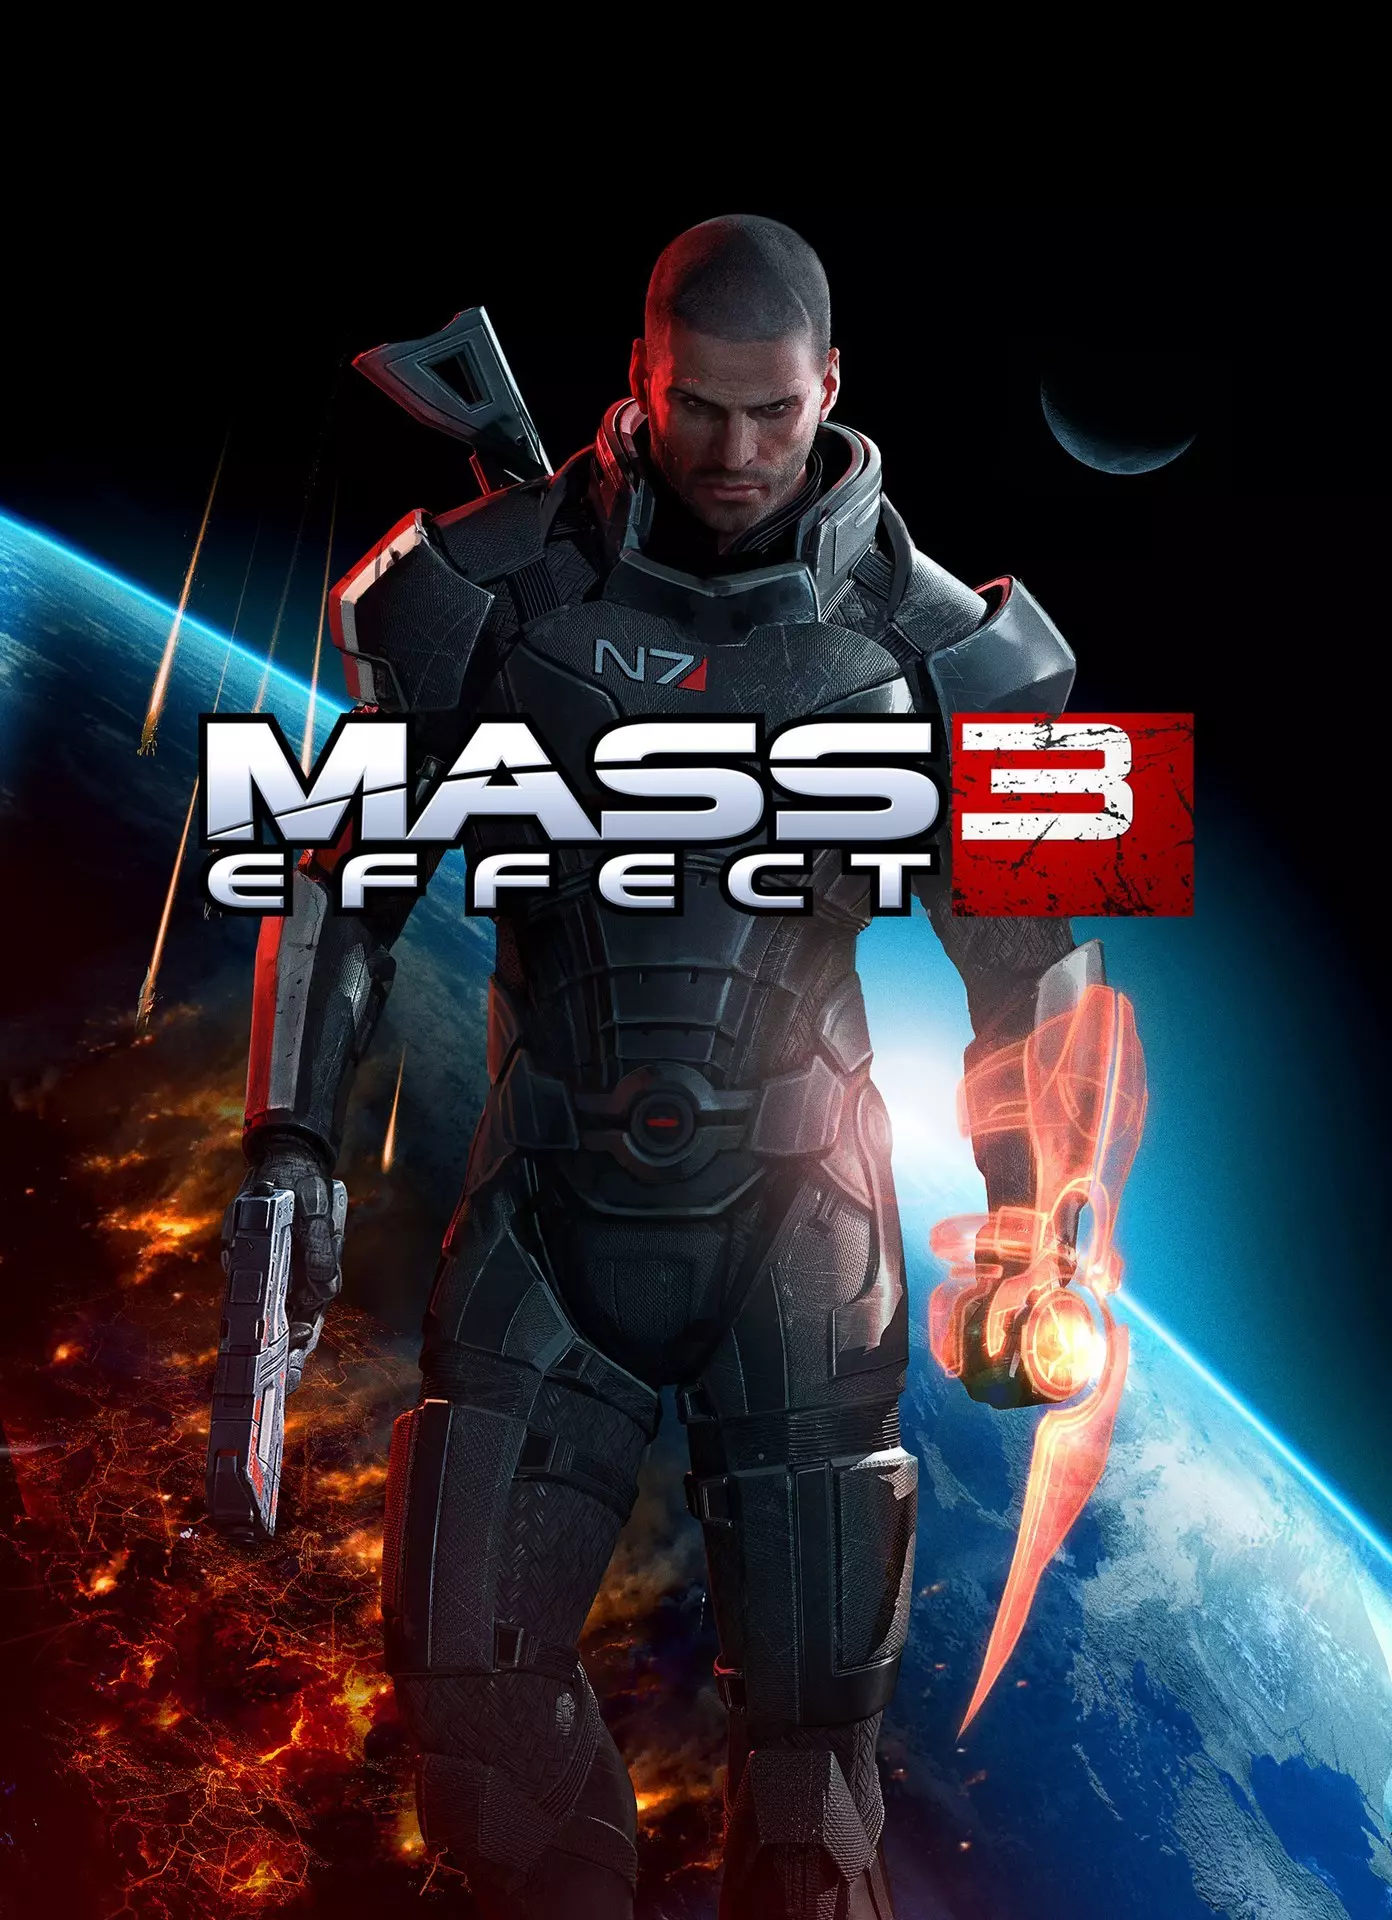 «Mass Effect 3» — компьютерная игра в жанре Action/RPG канадской компании BioWare, третья часть одноимённой серии игр.